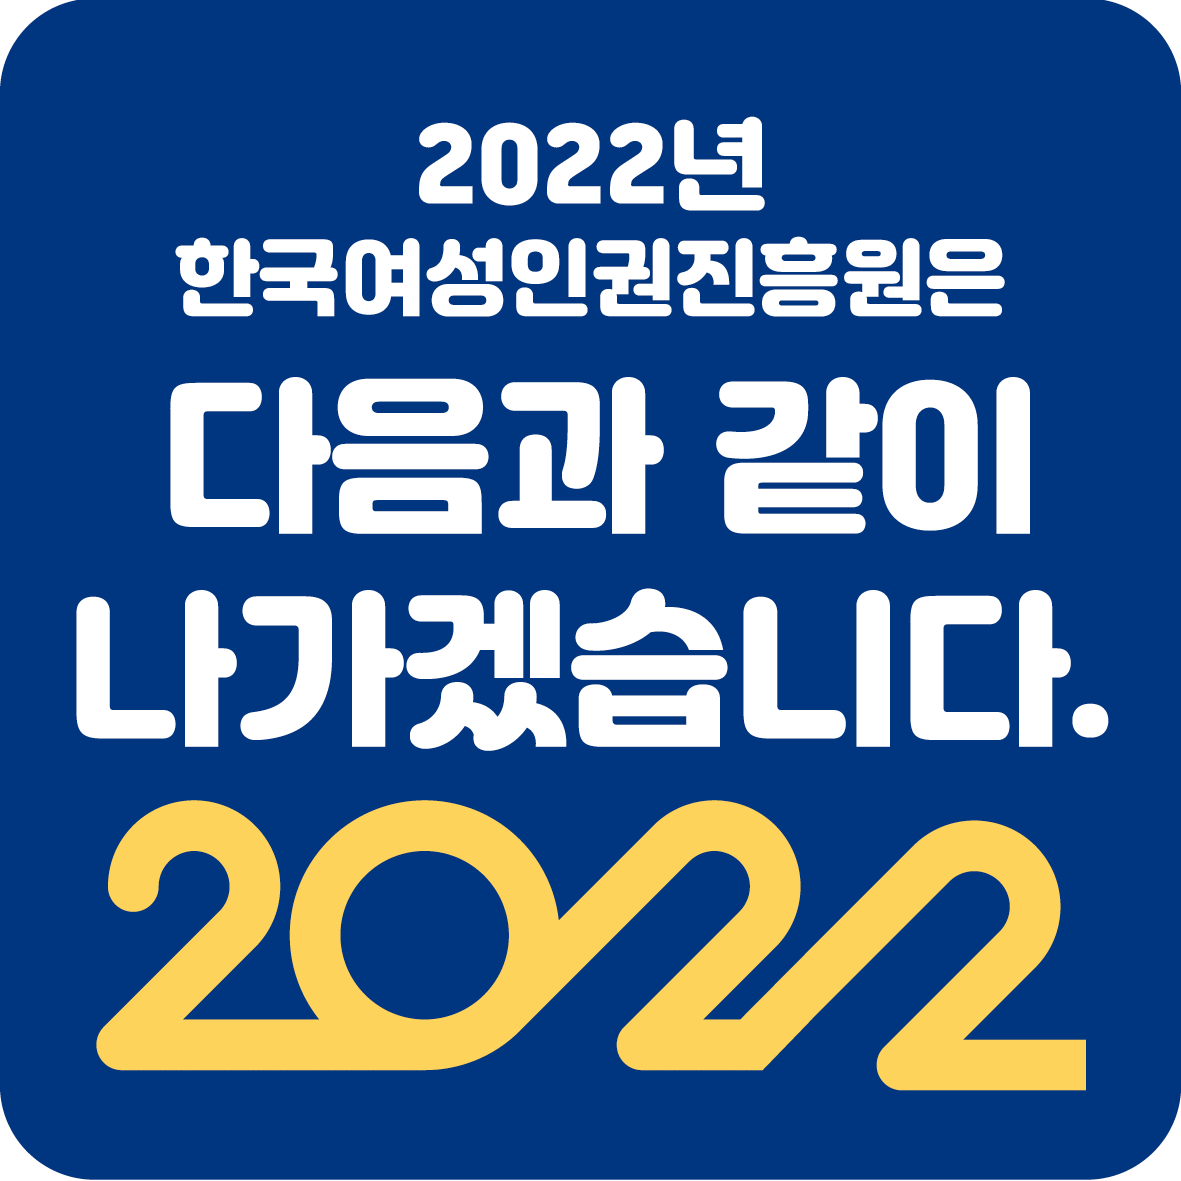 2장 2022년 한국여성인권진흥원은 다음과 같이 나가겠습니다. 2022